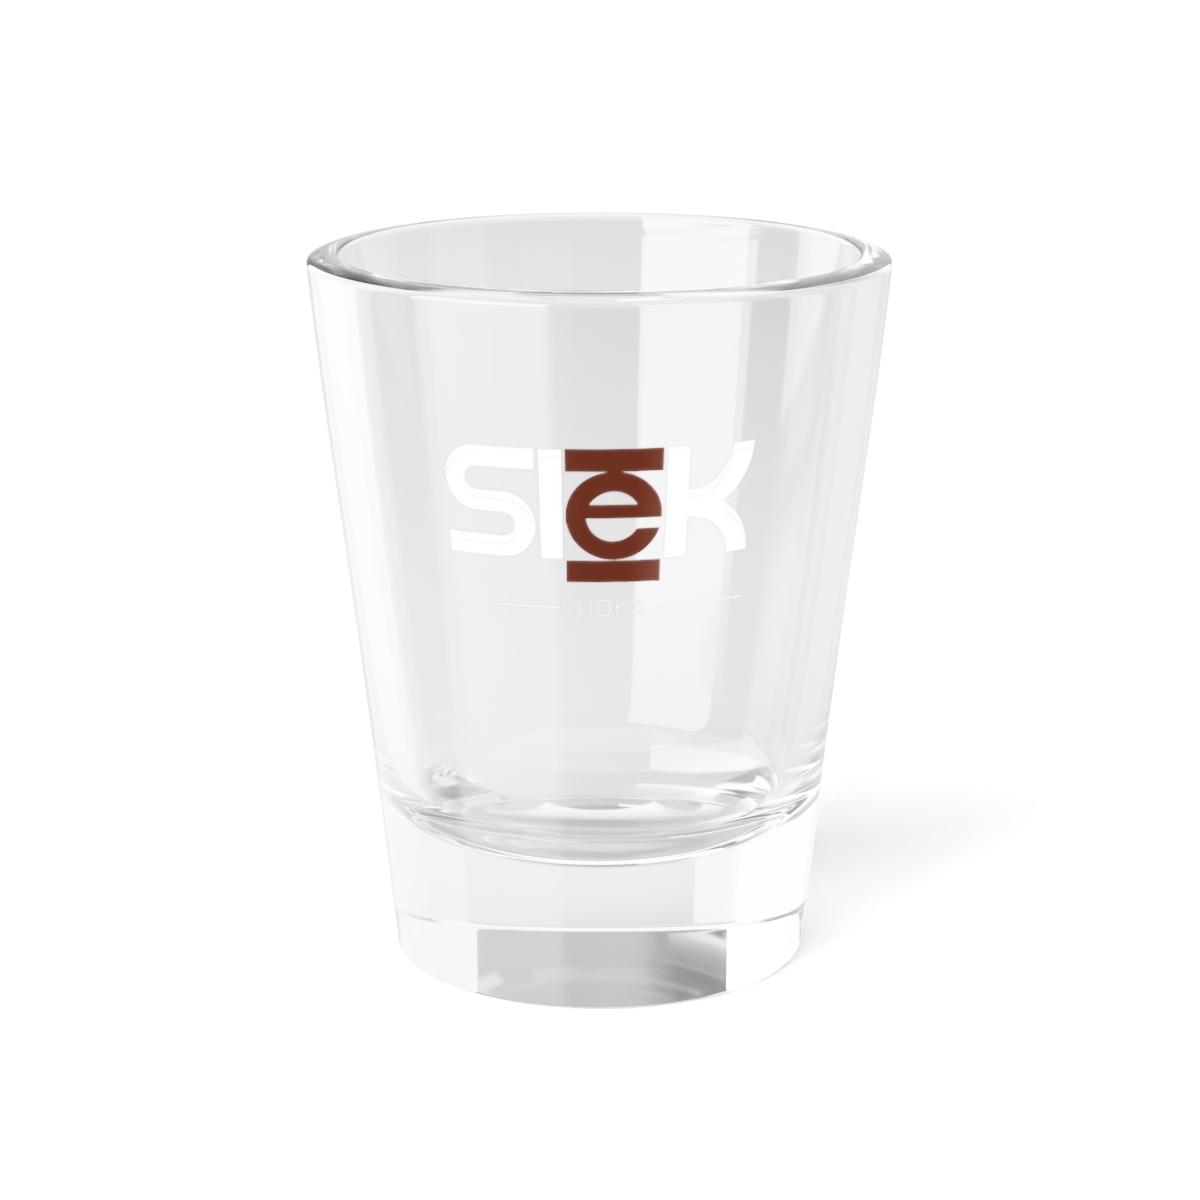  Slēk Vodka Shot Glass, 1.5oz product thumbnail image